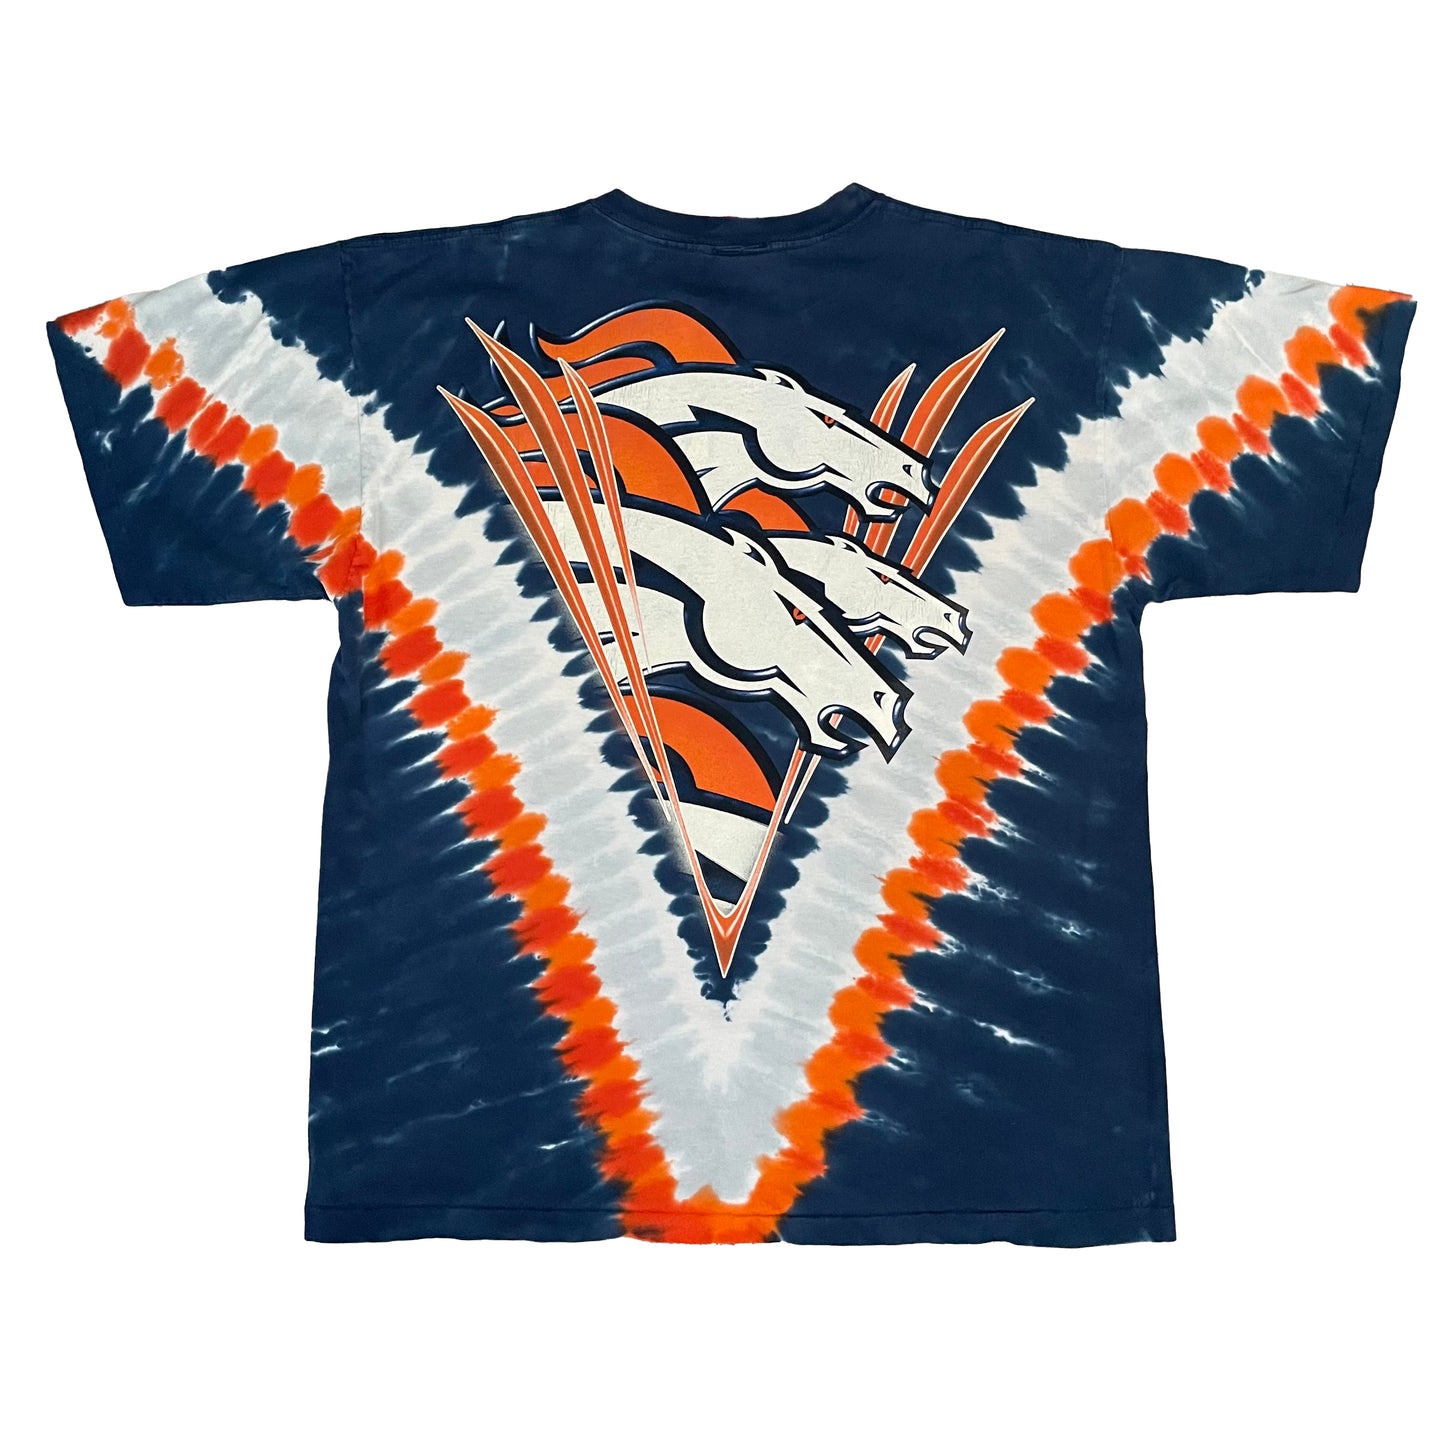 Denver Broncos tie dye shirt